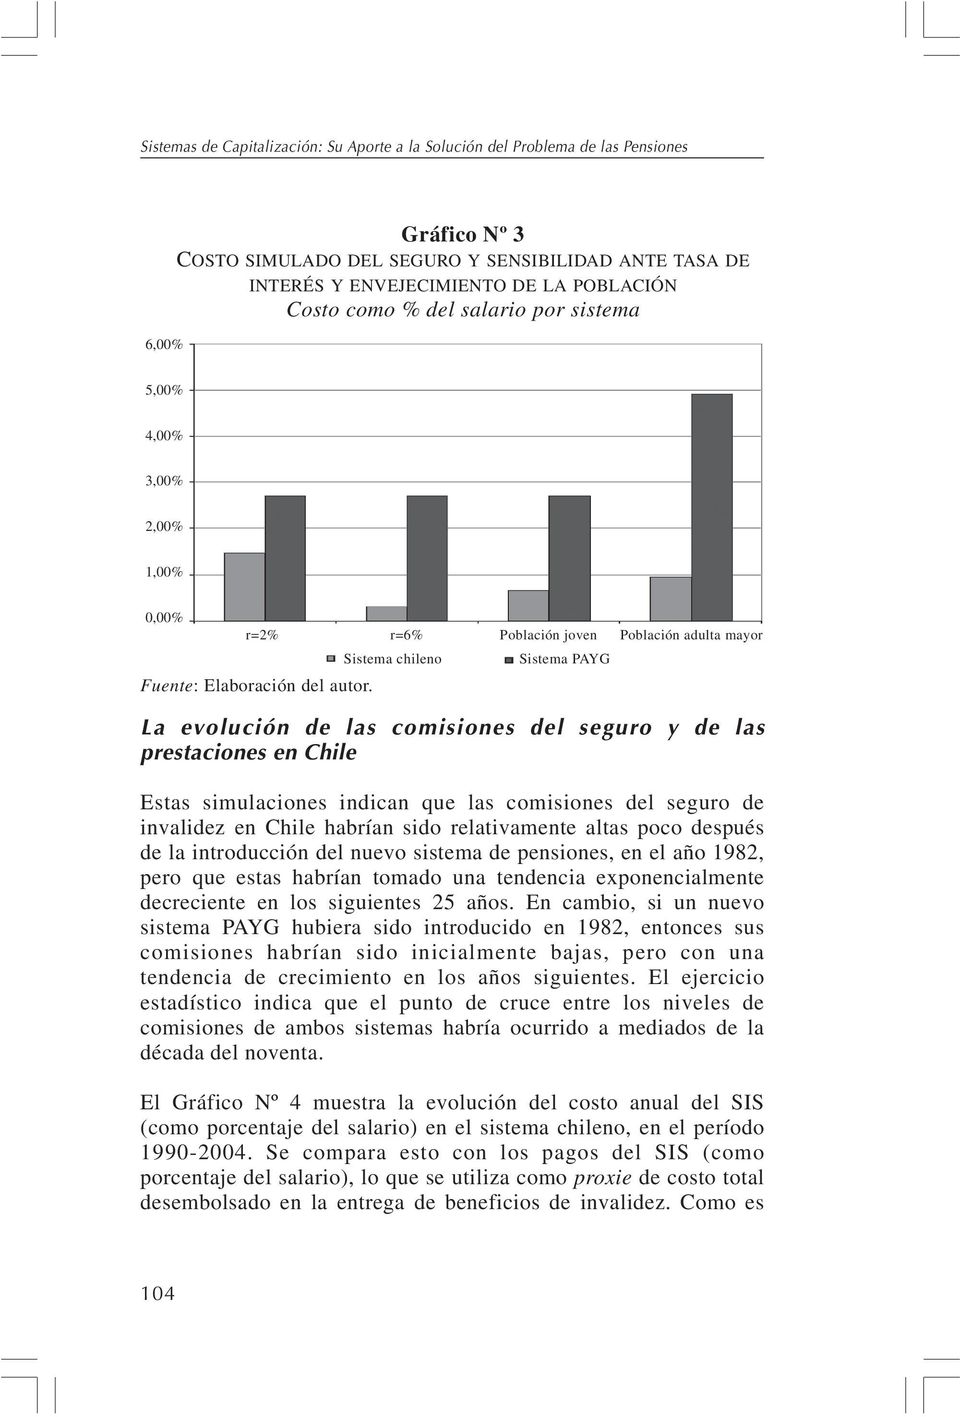 La evolución de las comisiones del seguro y de las prestaciones en Chile Estas simulaciones indican que las comisiones del seguro de invalidez en Chile habrían sido relativamente altas poco después